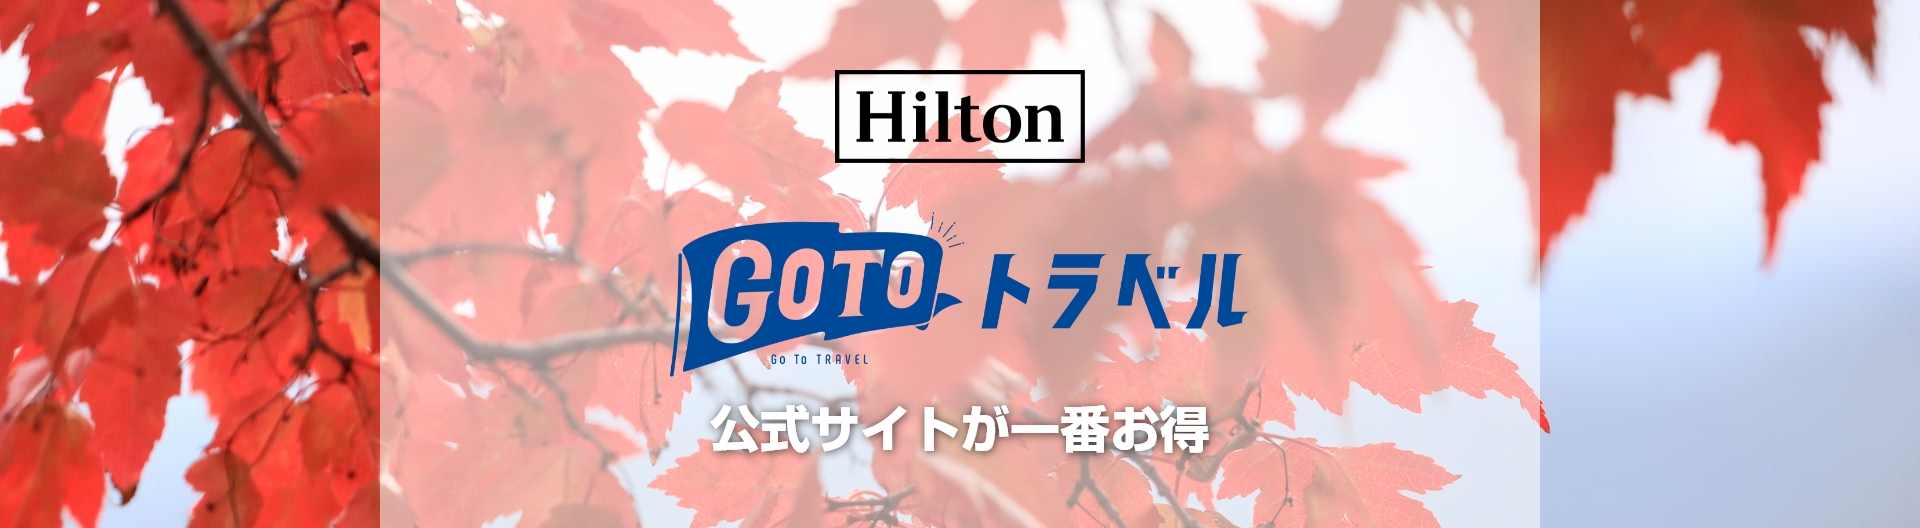 Hilton Go Toトラベル 公式サイトが一番お得